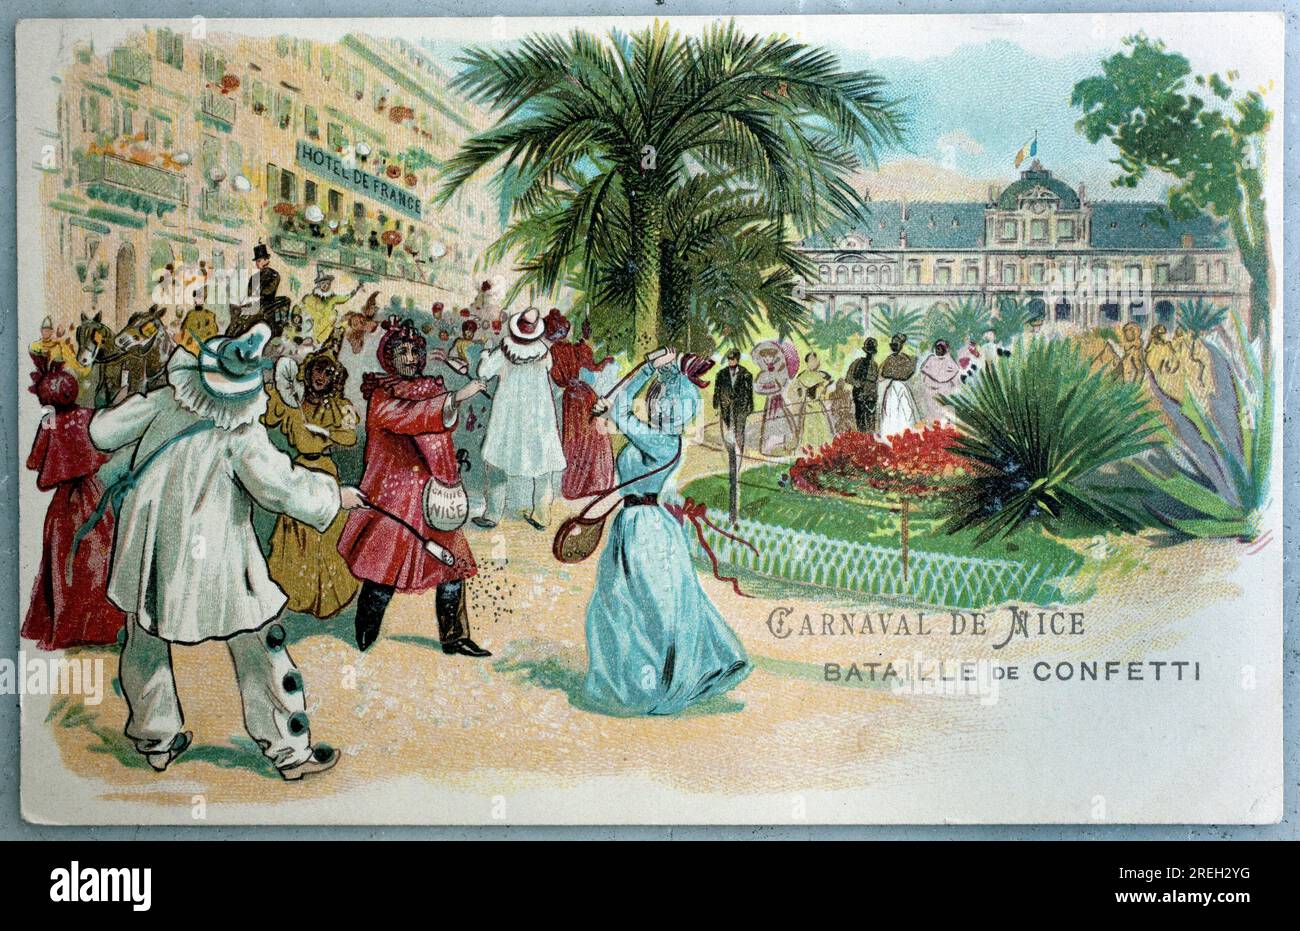 Carnaval de Nice, bataille de confettis. Carte postale ancienne, illustration debut 20e siecle. Banque D'Images